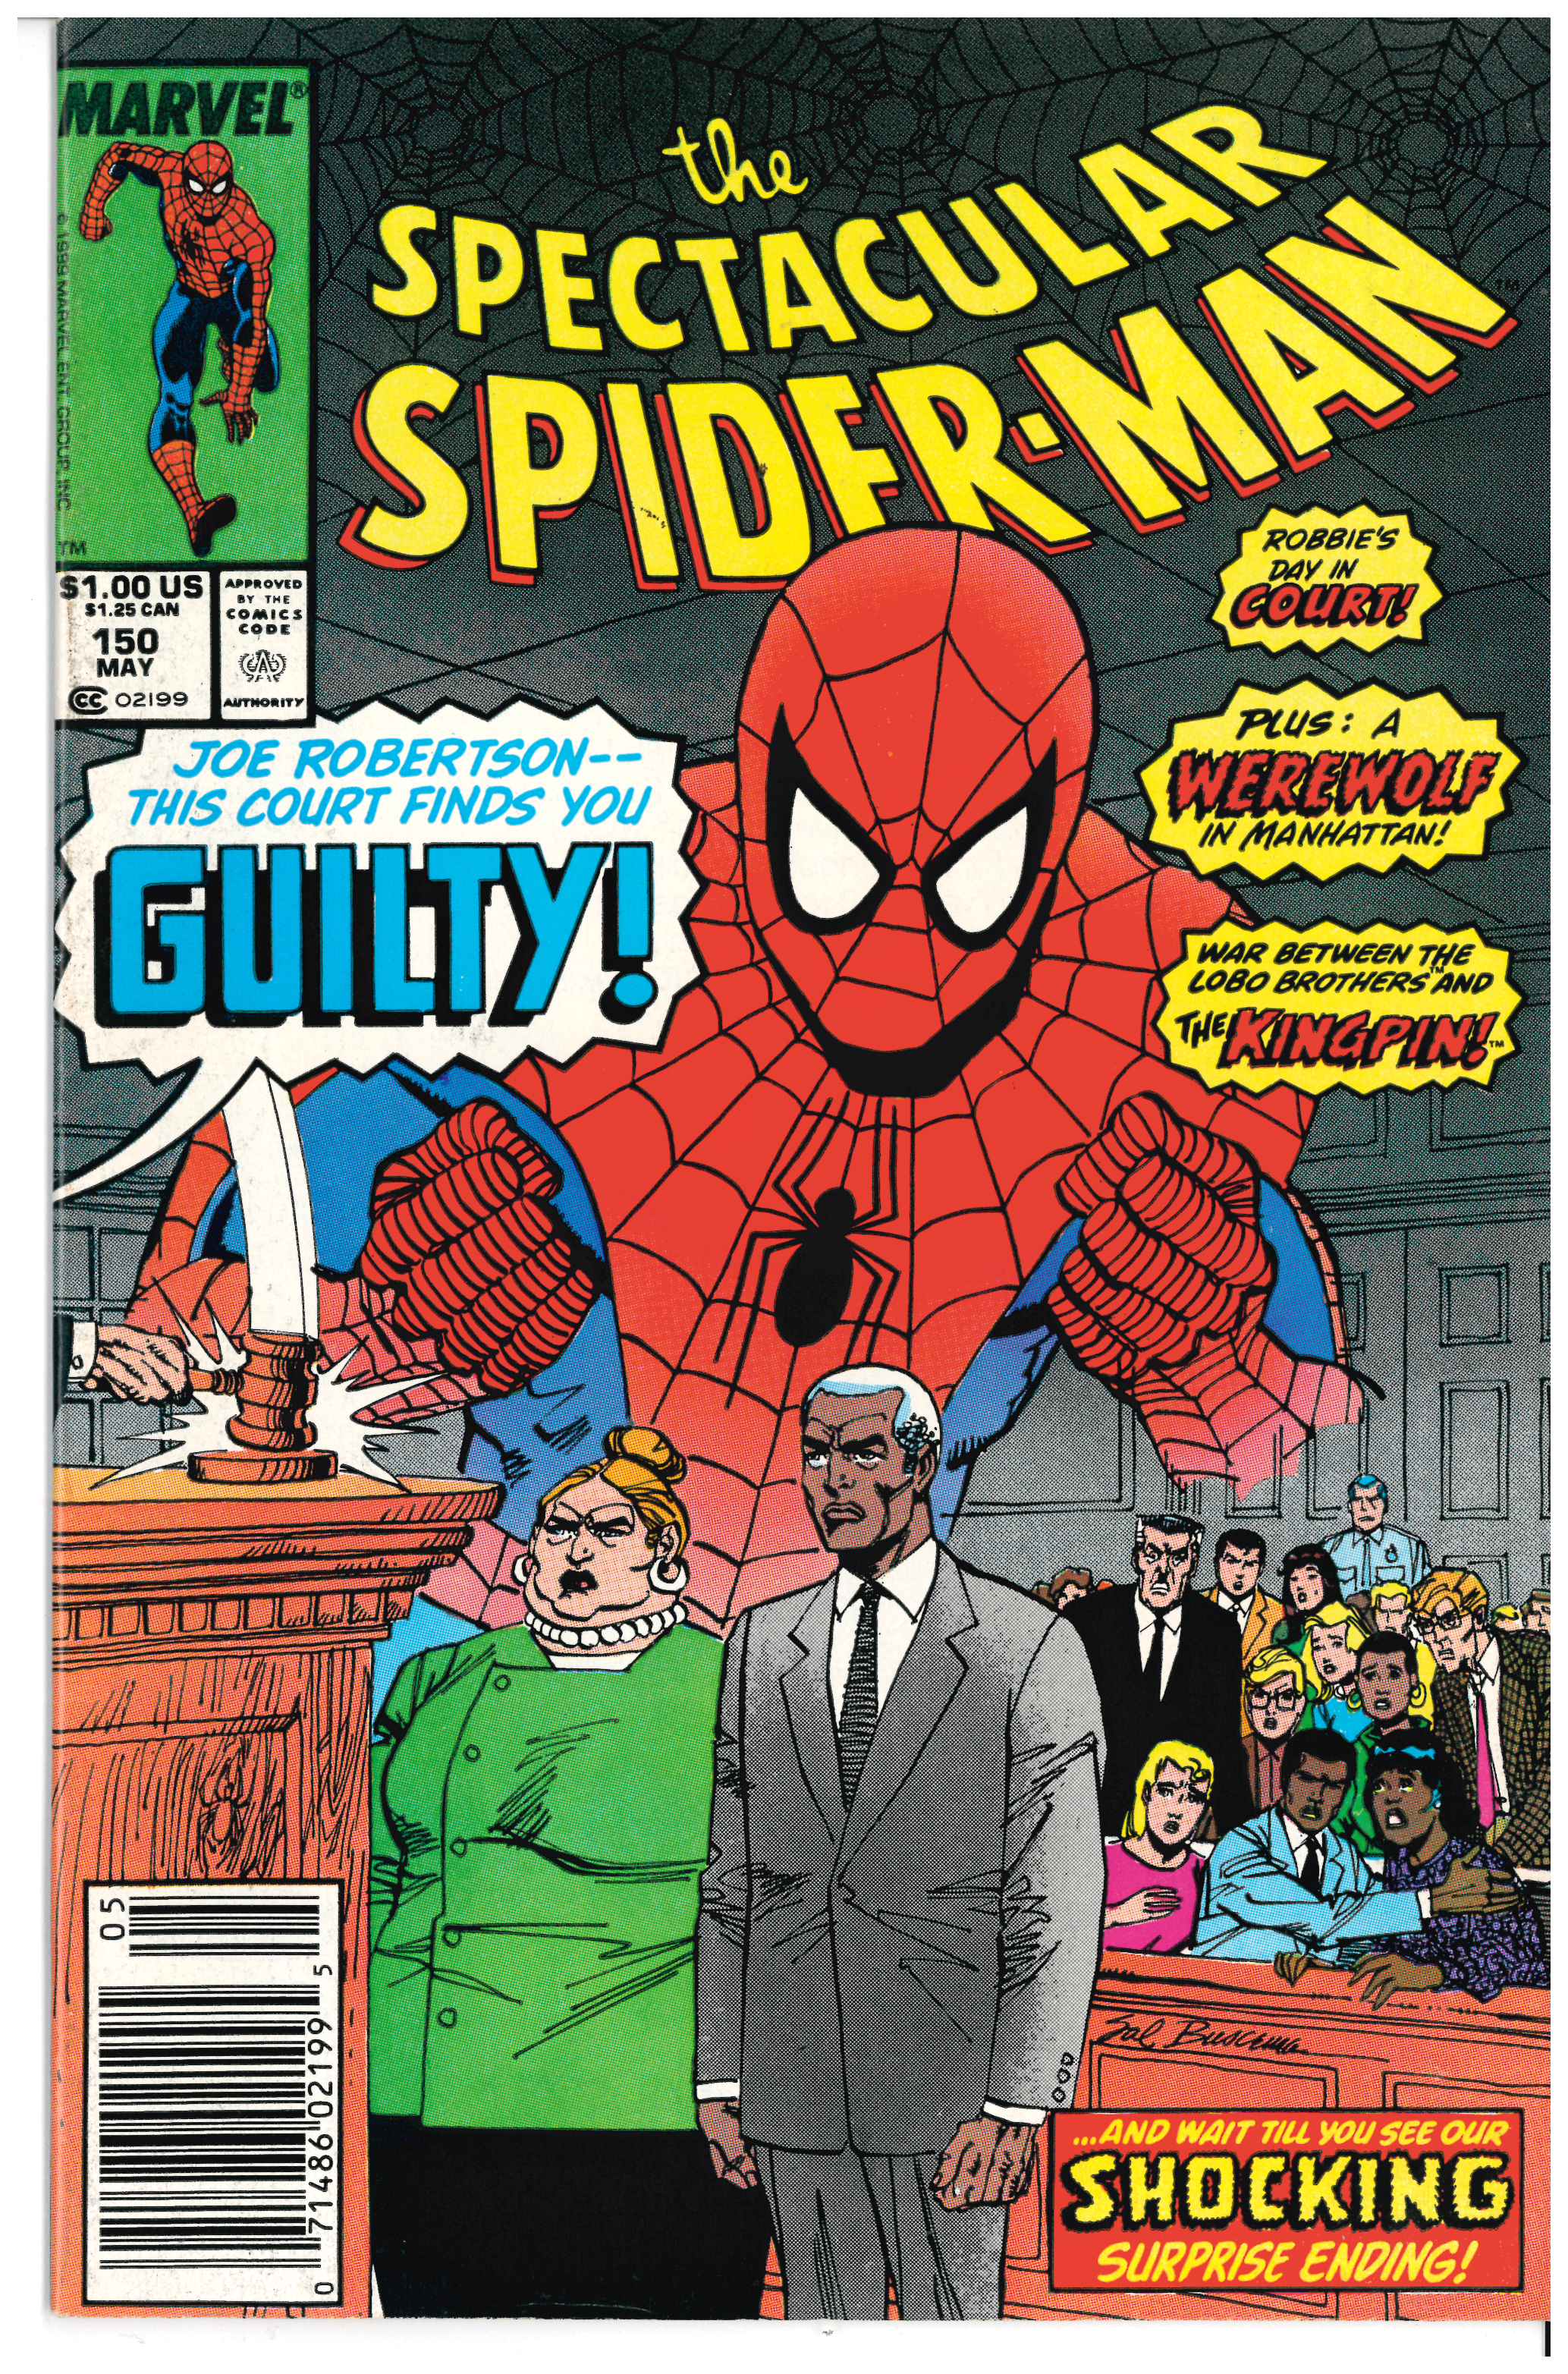  Spectacular Spider-Man #150